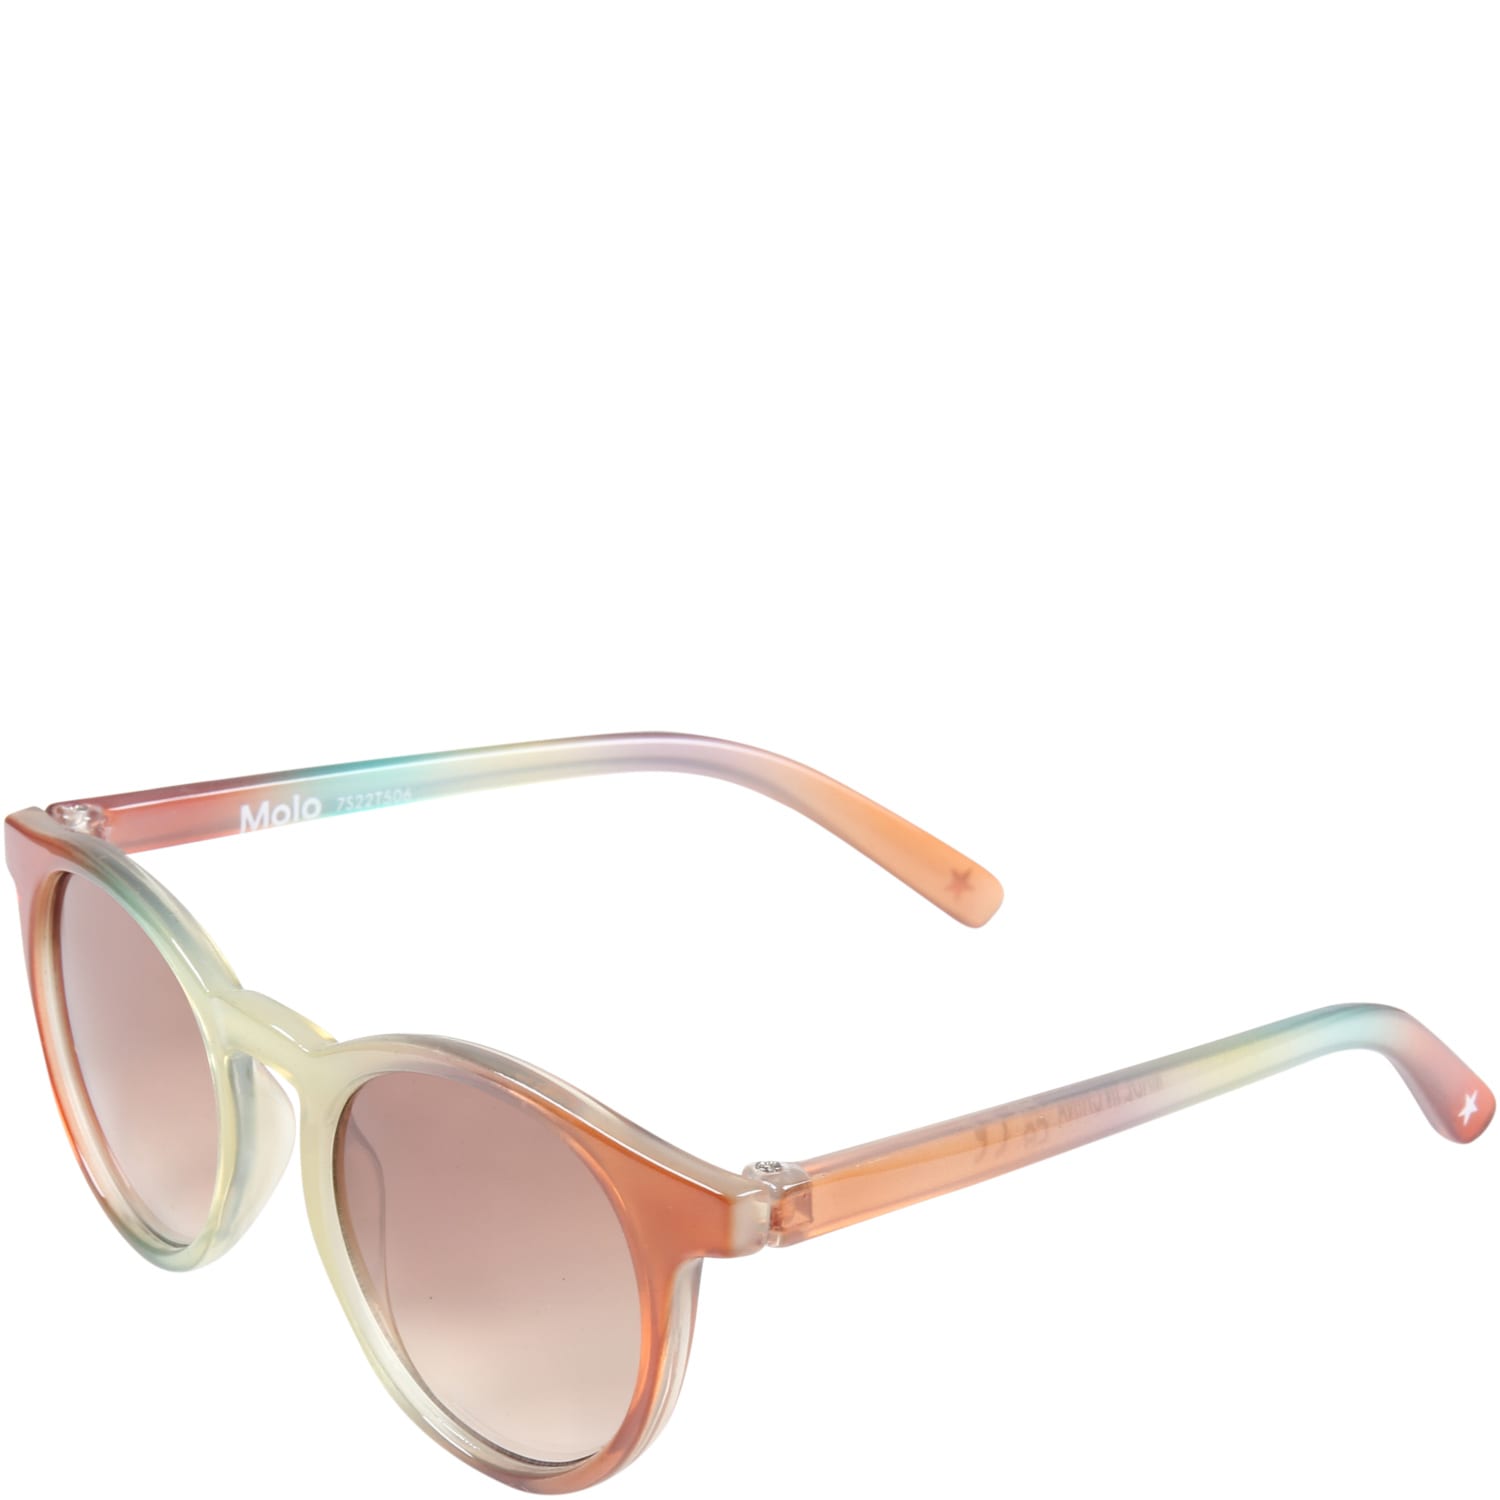 Molo Multicolor Sunglasses sun Shine For Kids